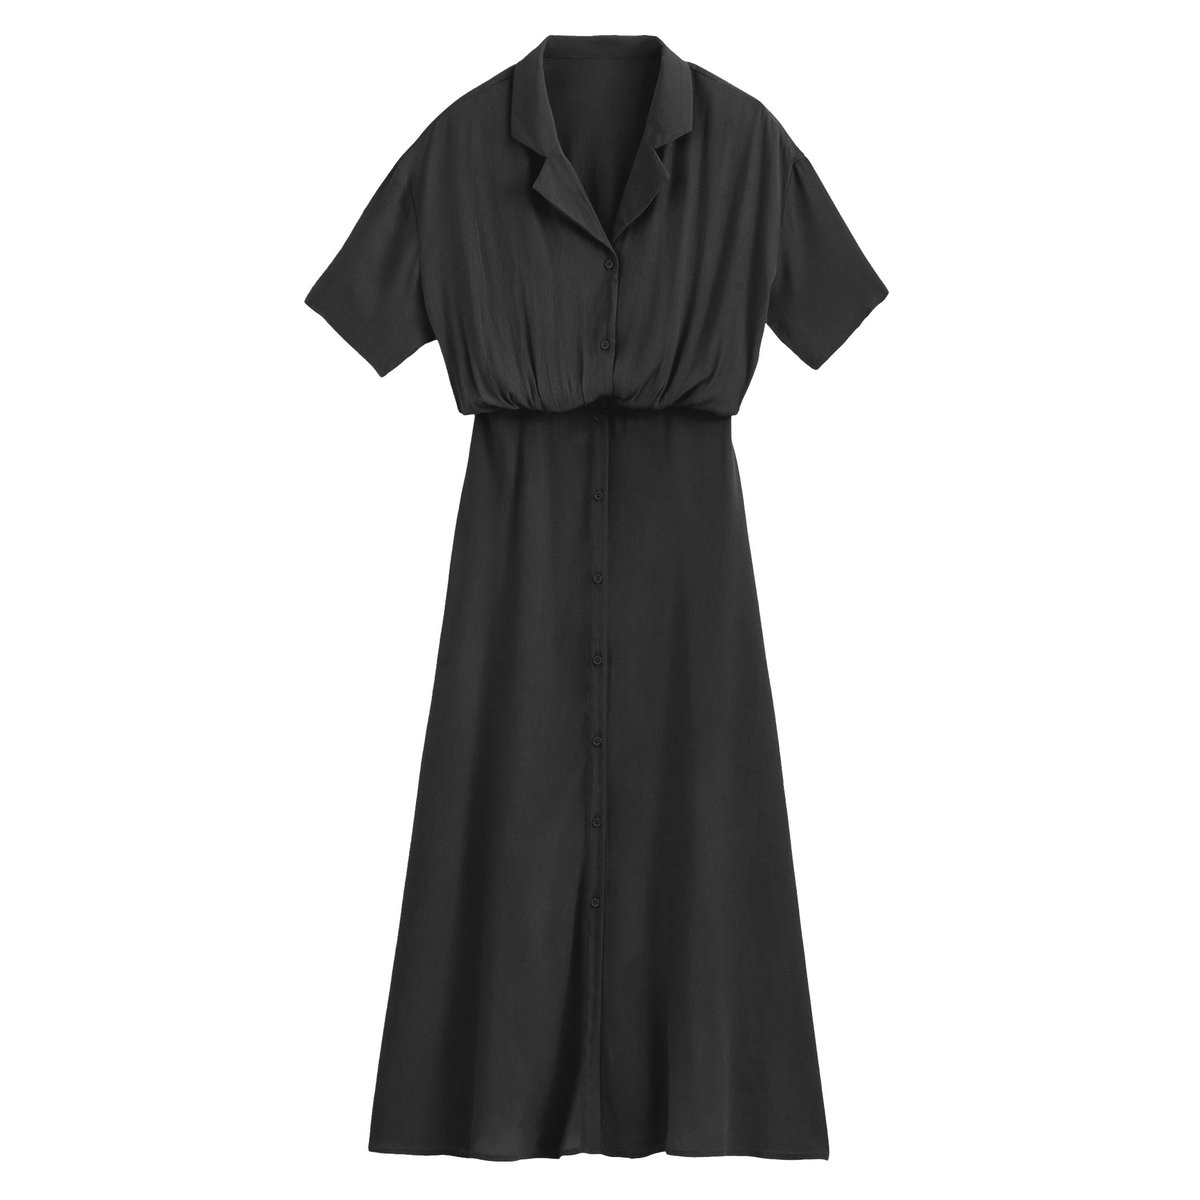 Платье-рубашка La Redoute Длинное с короткими рукавами 42 (FR) - 48 (RUS) черный, размер 42 (FR) - 48 (RUS) Длинное с короткими рукавами 42 (FR) - 48 (RUS) черный - фото 5